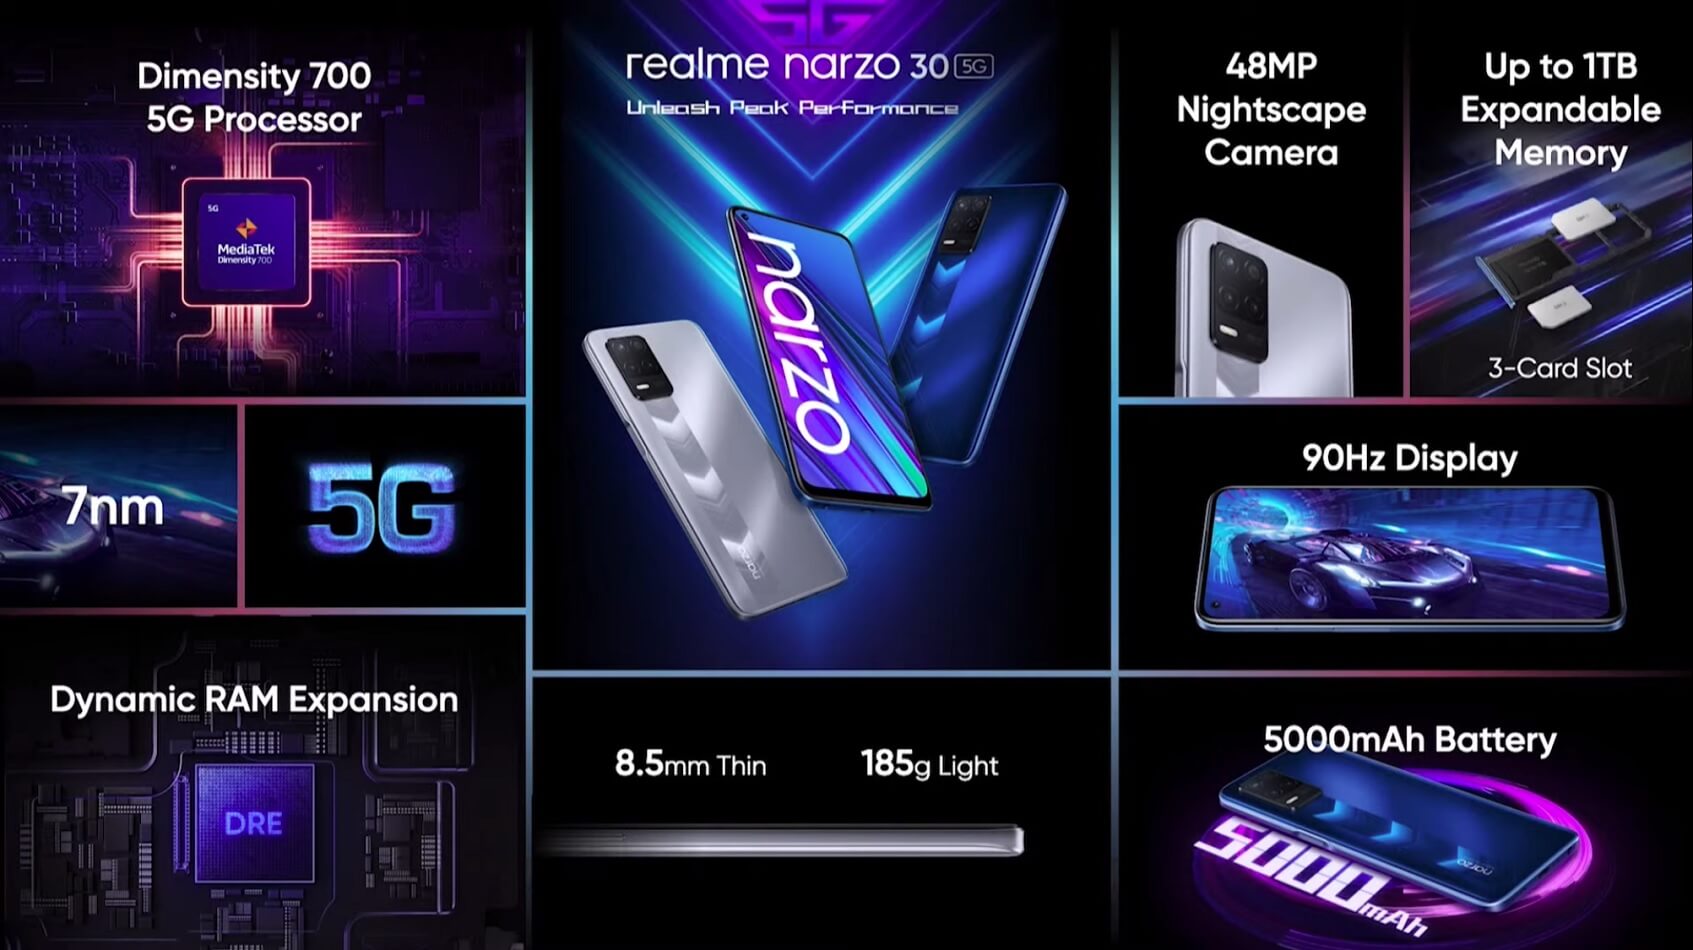 realme Narzo 30 5G features